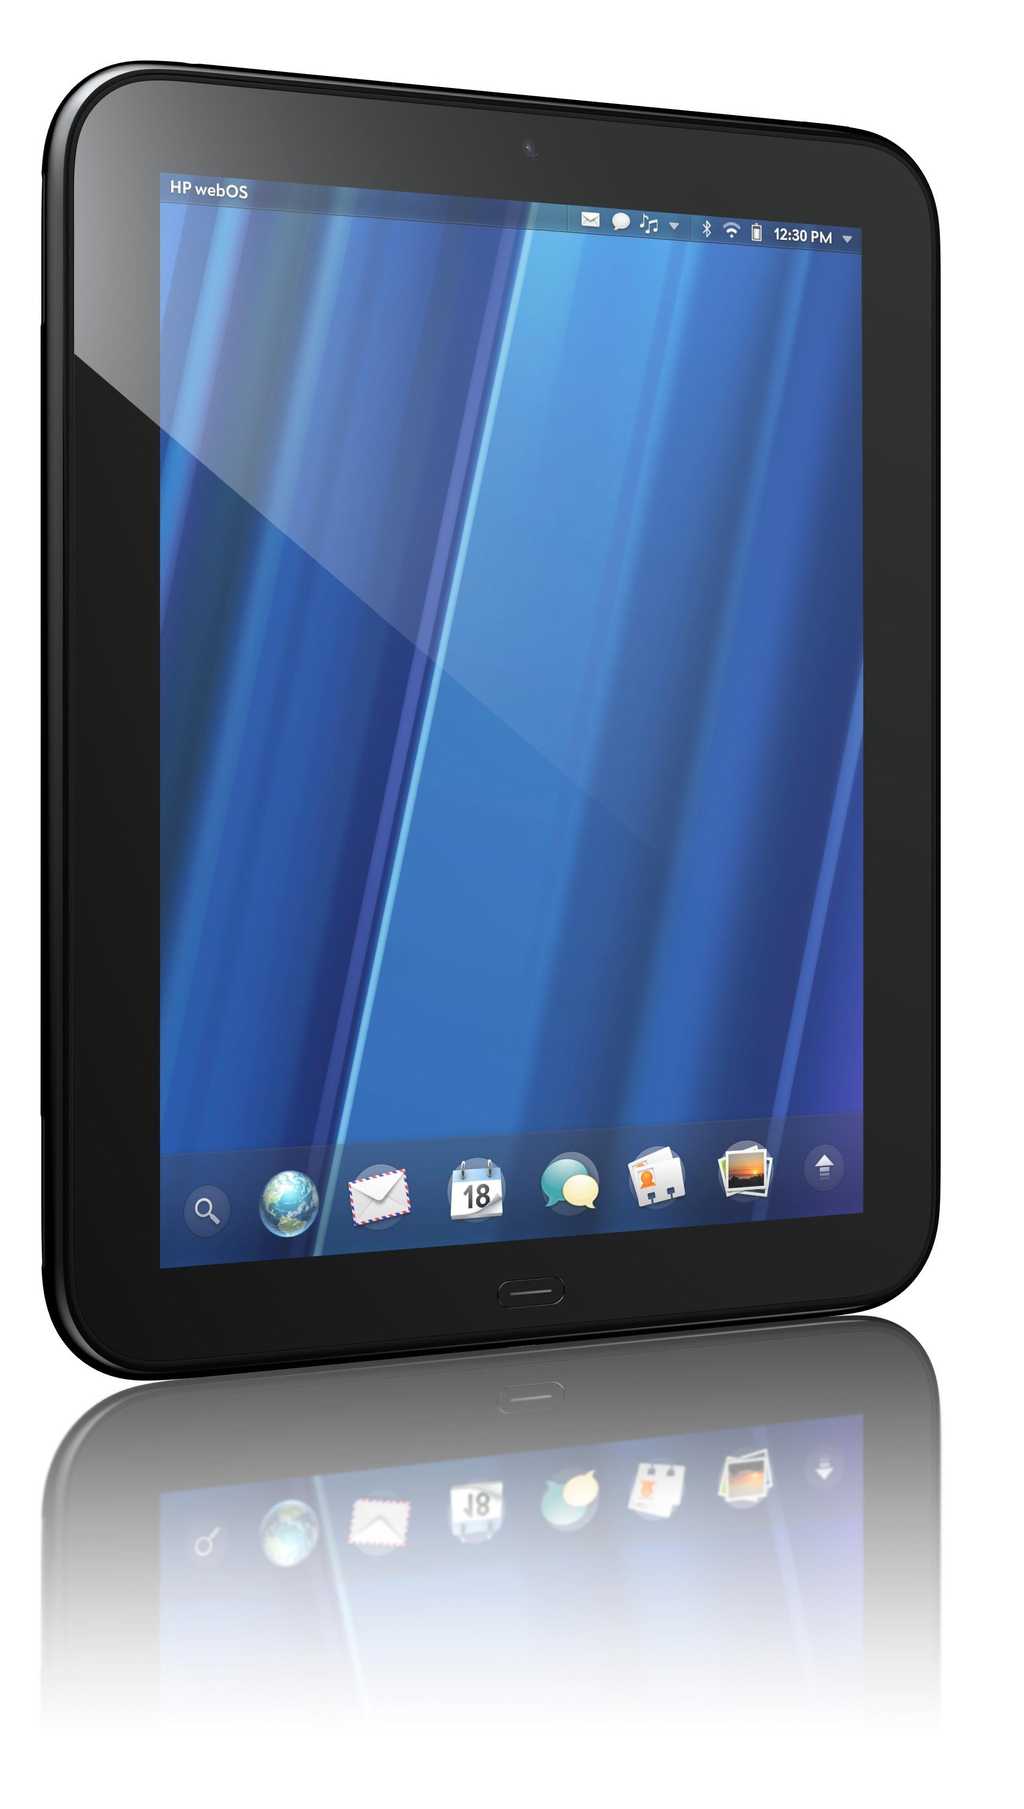 La tablette de HP, baptisée TouchPad, tourne sous un système d'exploitation efficace mais isolé : WebOS. © HP